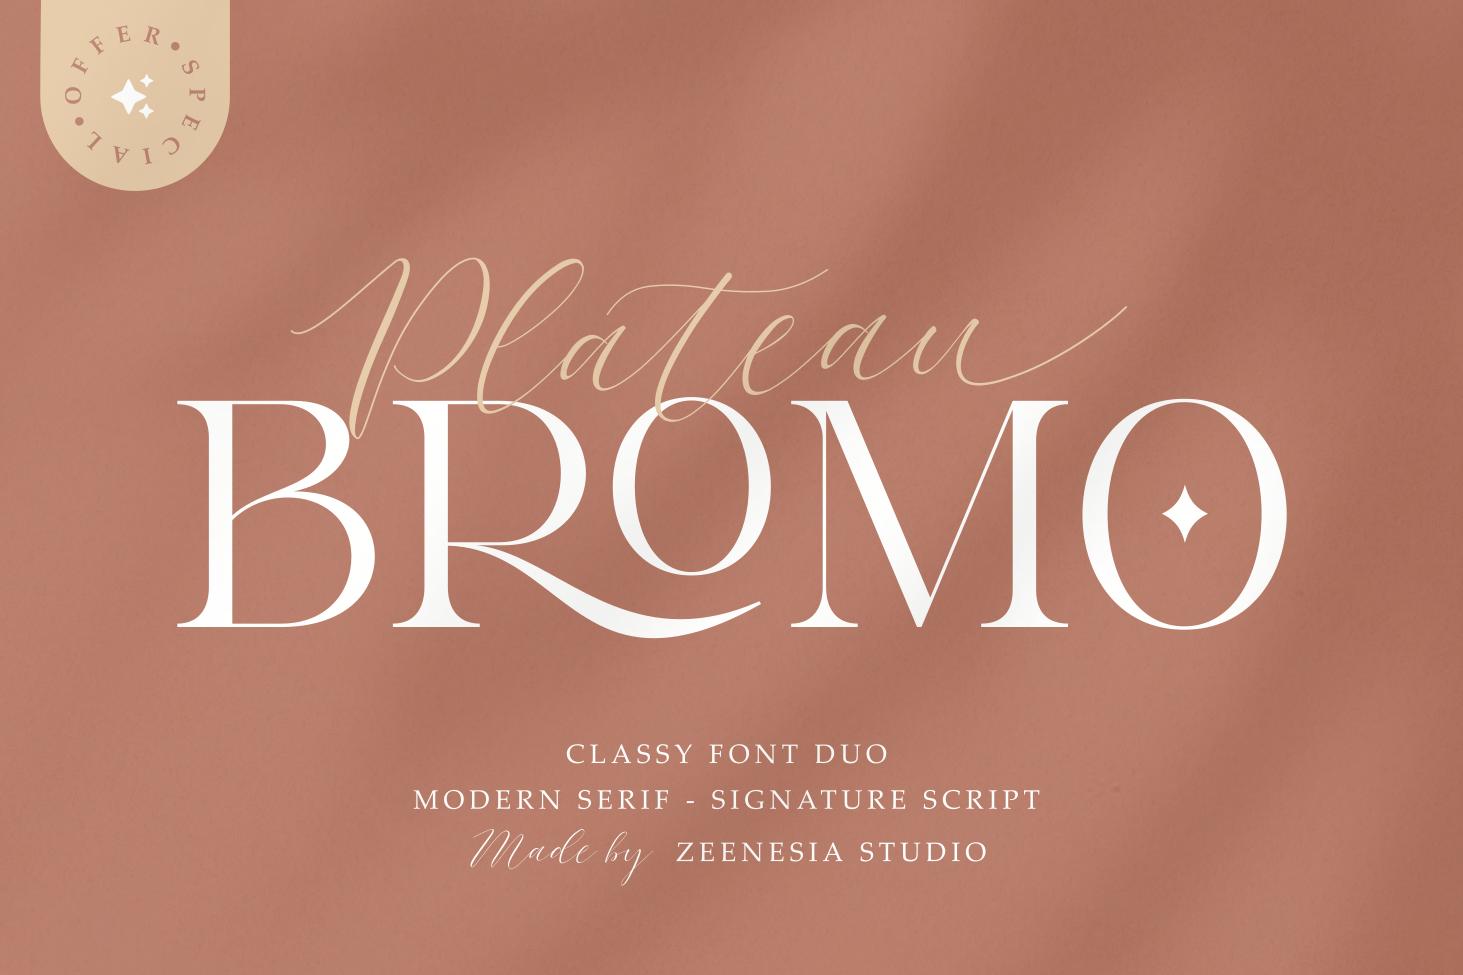 Bromo Plateau Font